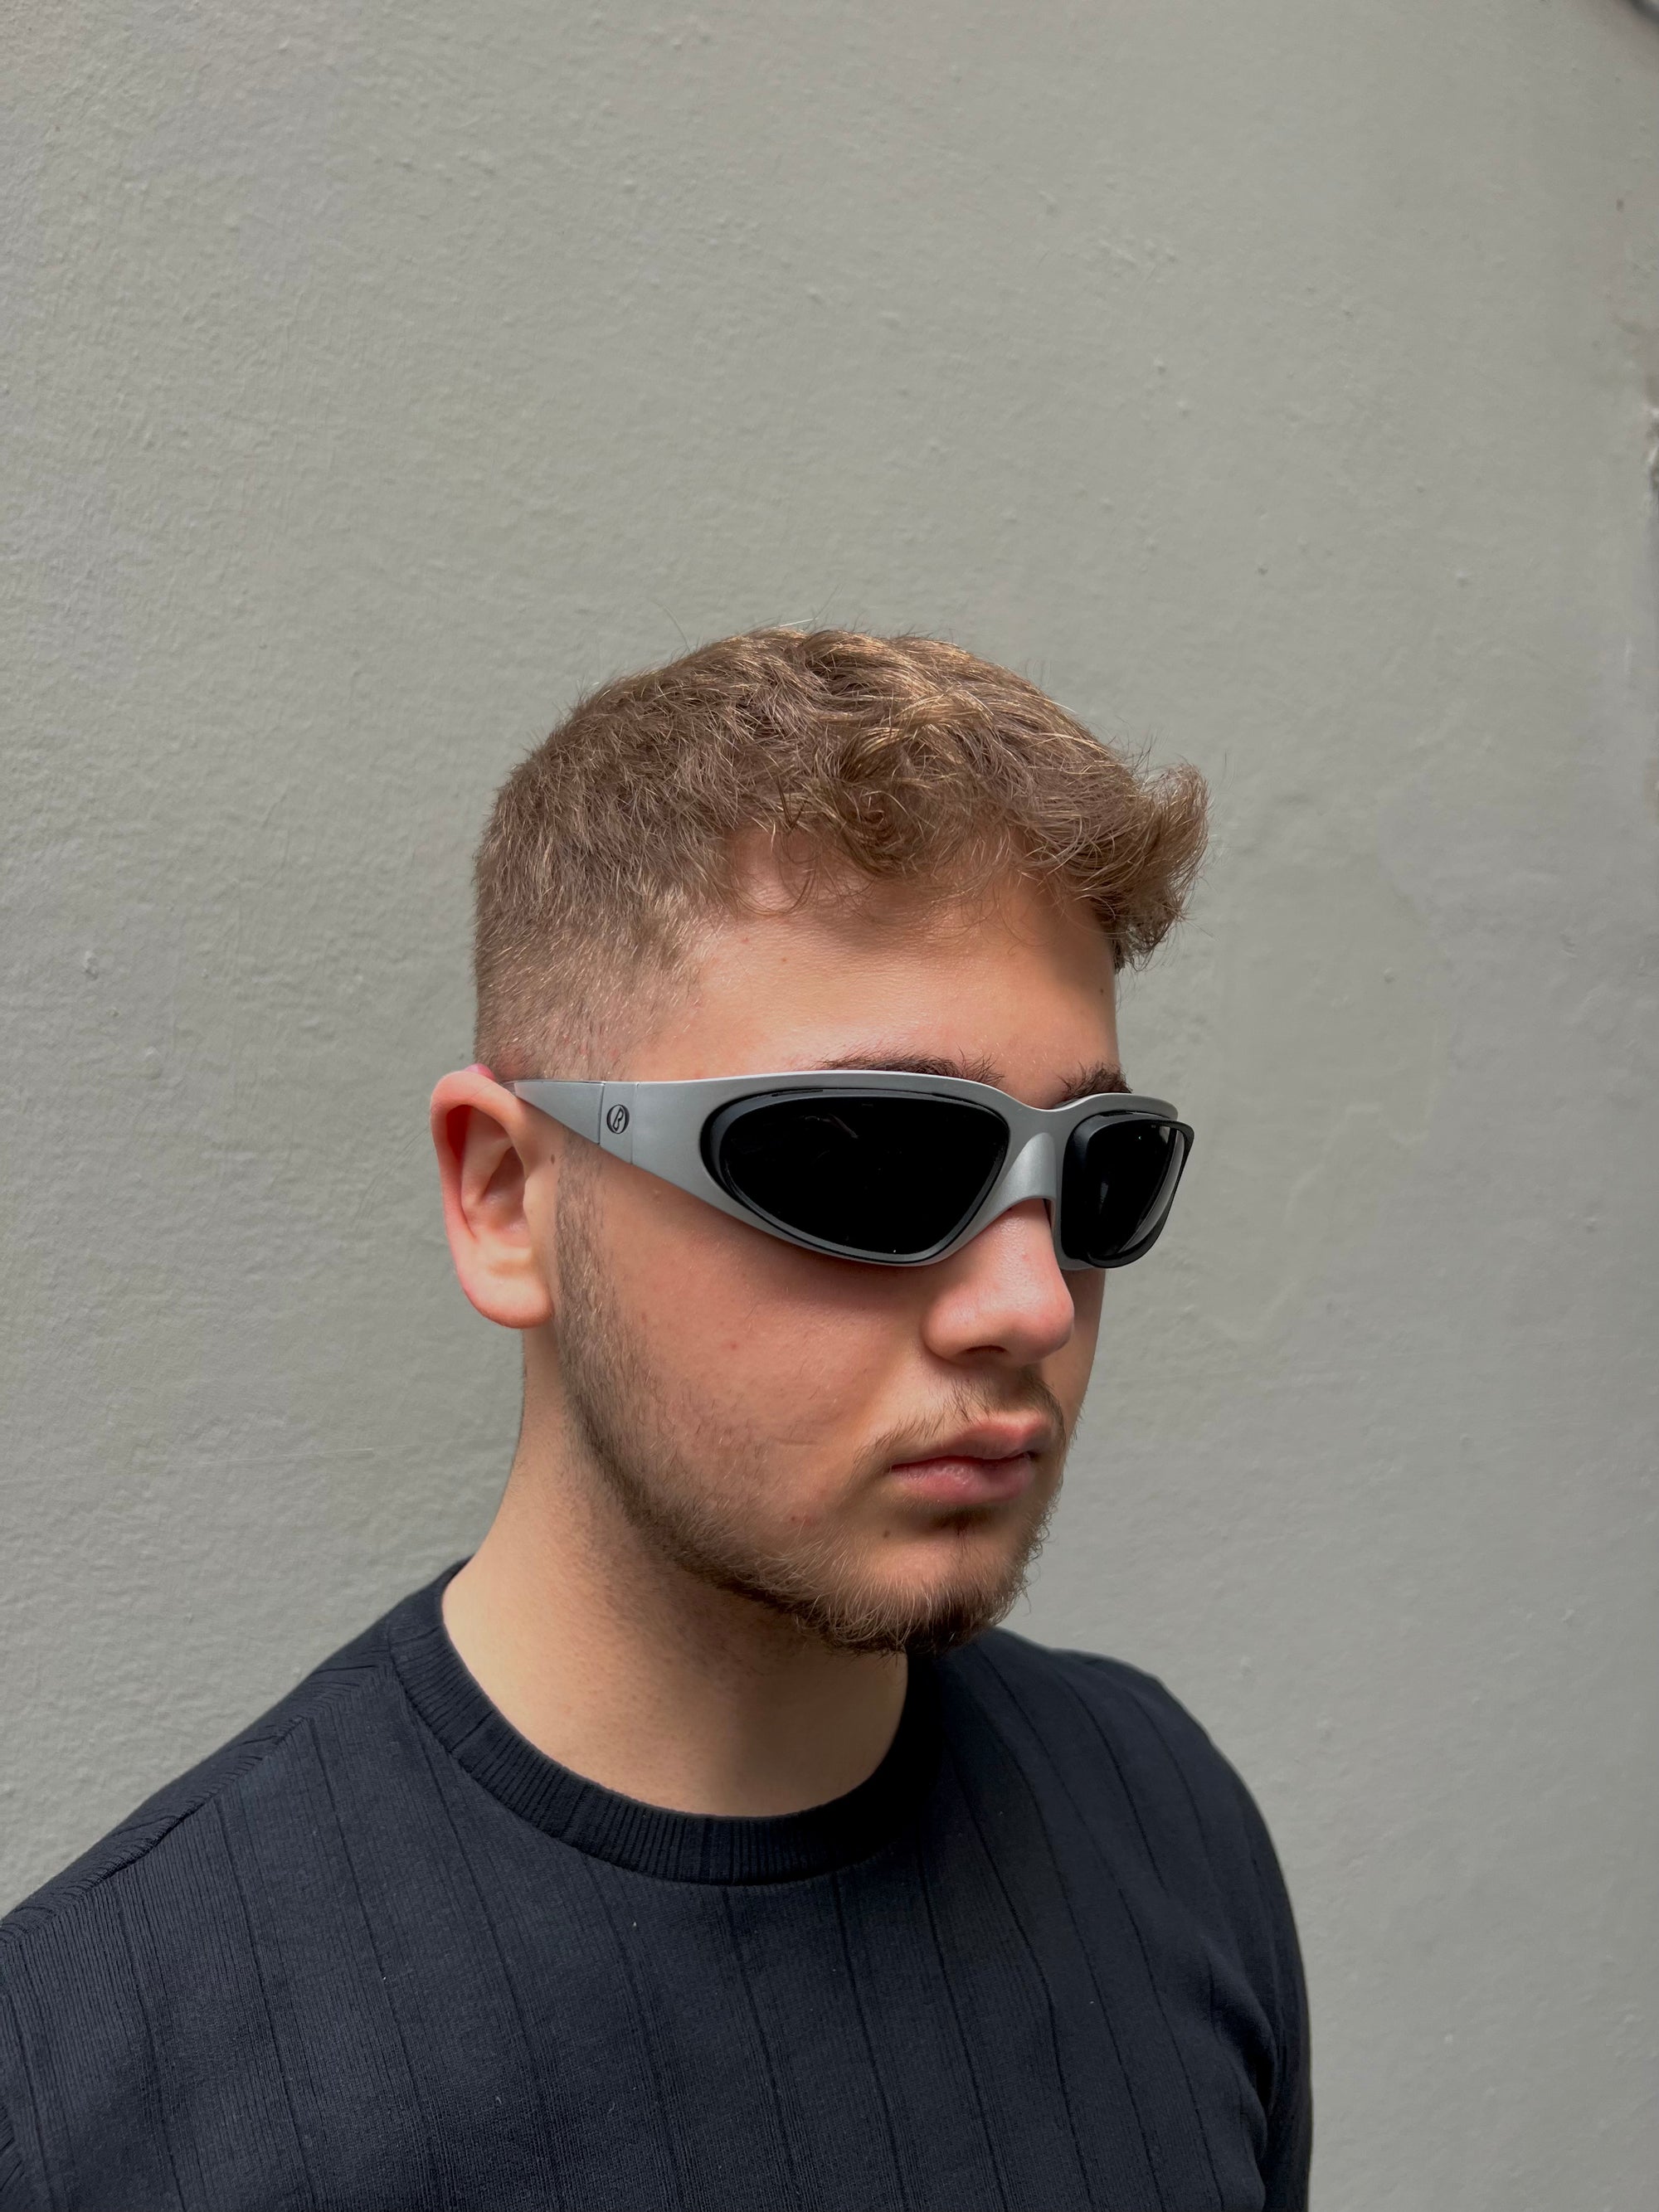 Tragebild von einer Baruffaldi Y2K Sonnenbrille vor grauem Hintergrund.